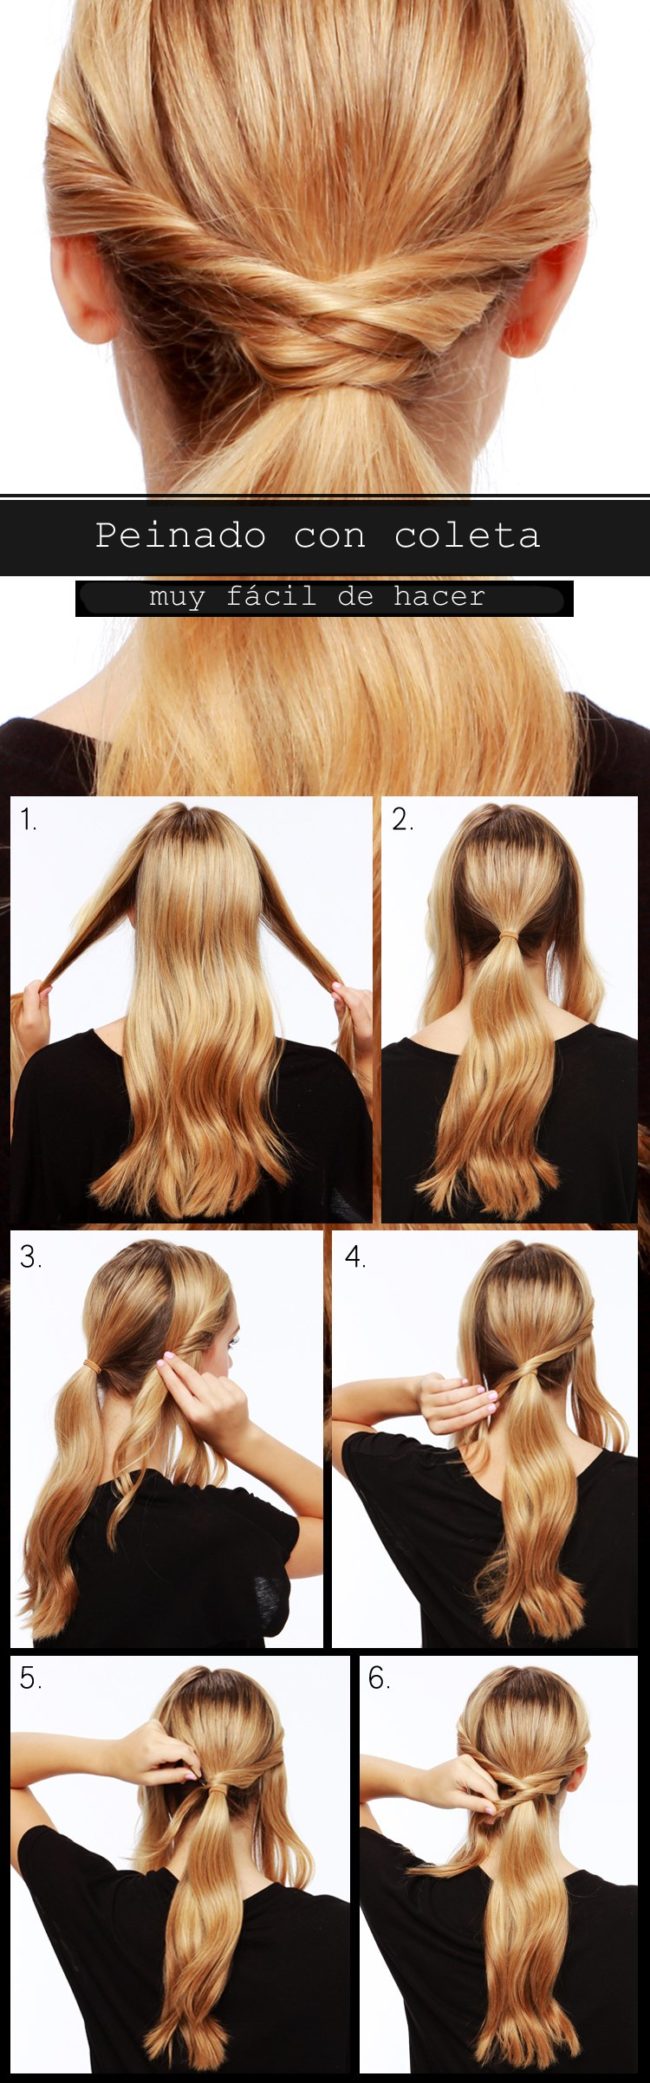 5 Peinados fáciles que te harán lucir hermosa